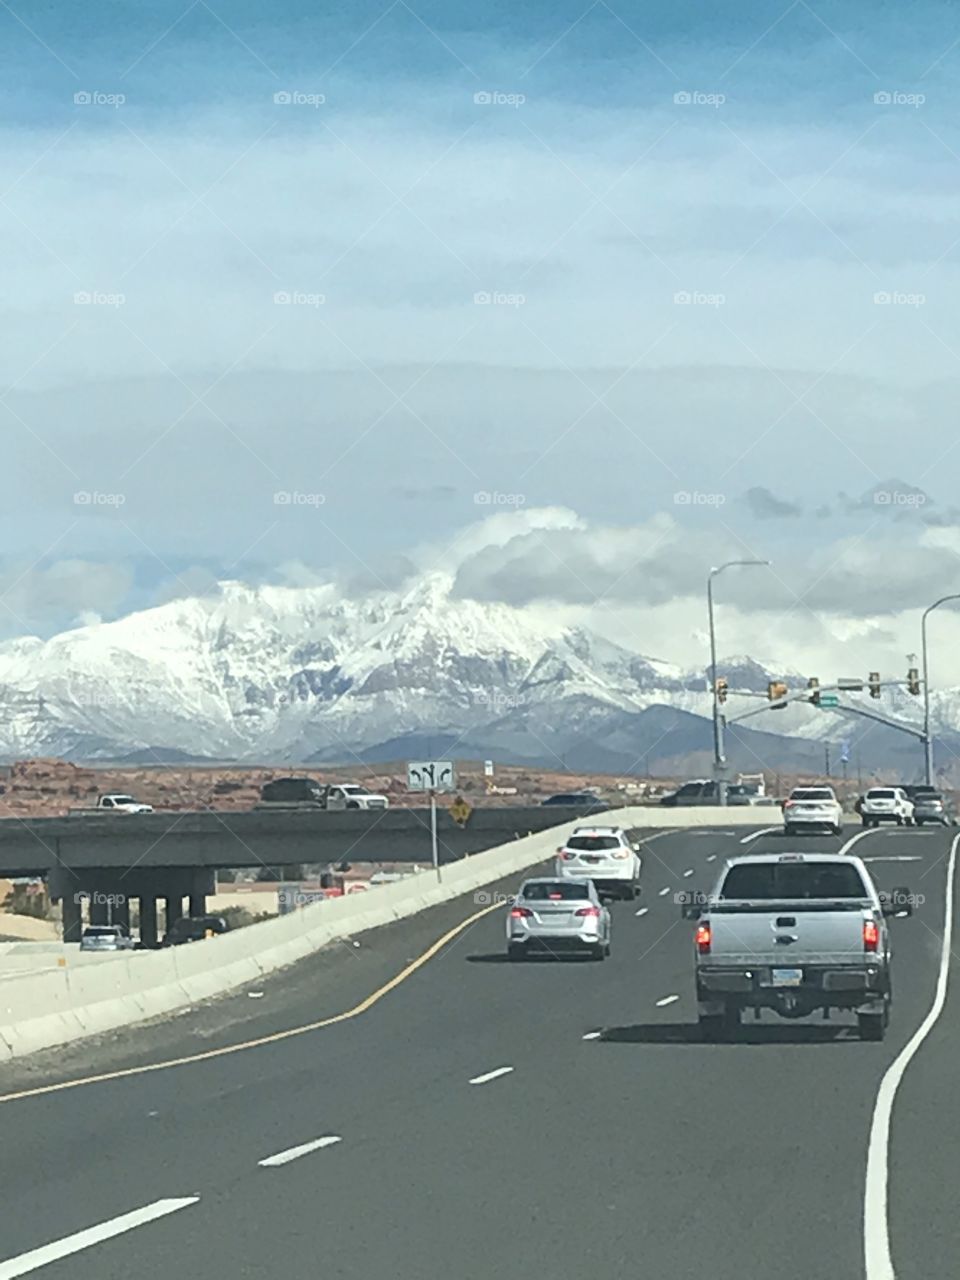 More snow in Utah